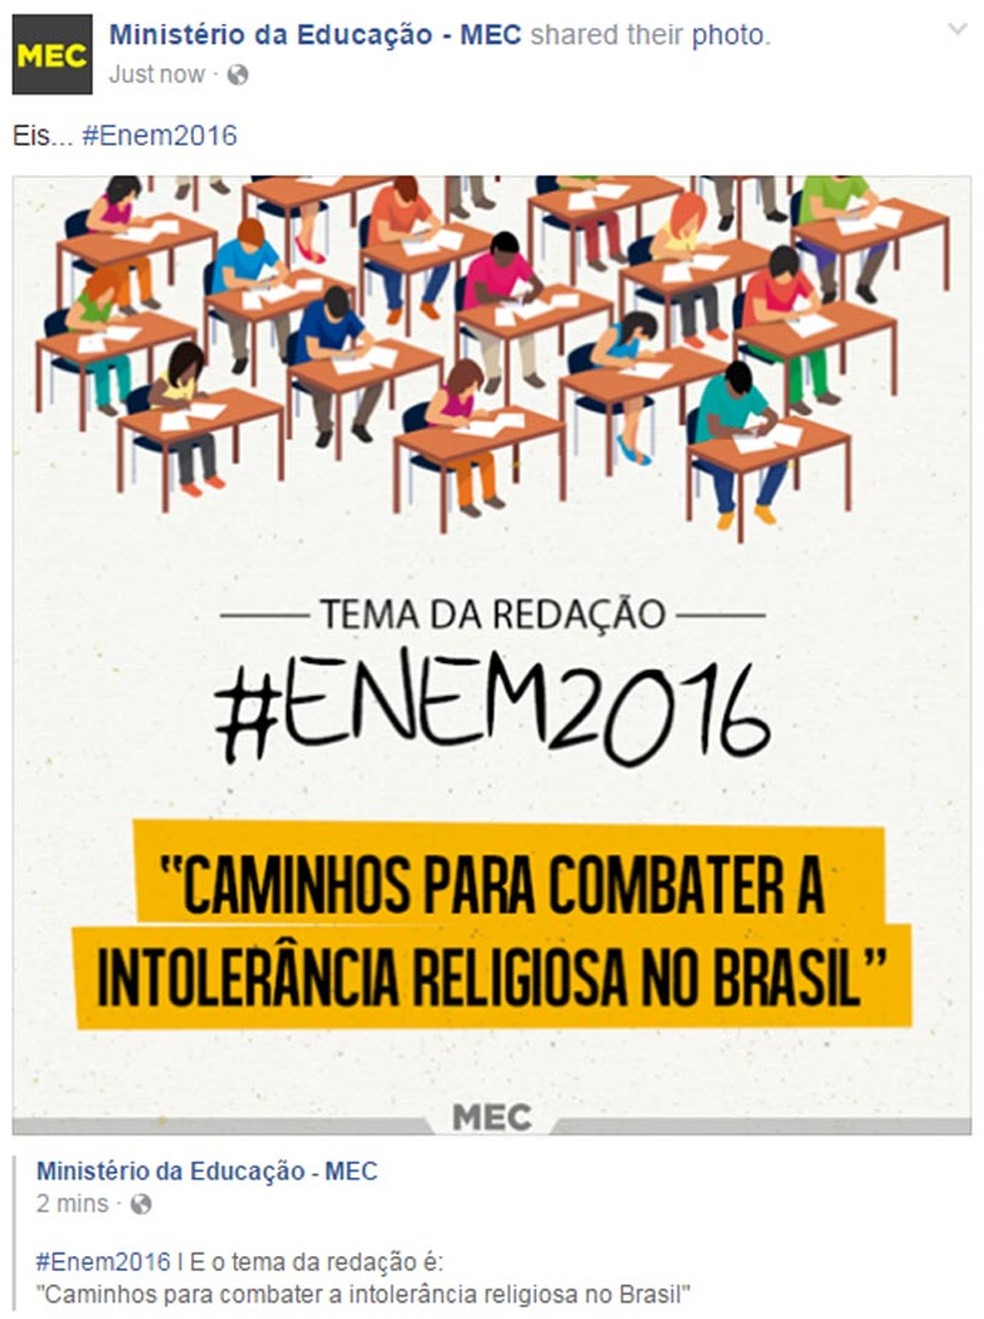 O perfil oficial do MEC no Facebook também divulgou o tema da redação do Enem 2016; prova abordou a intolerância religiosa no Brasil (Foto: Reprodução/Facebook)